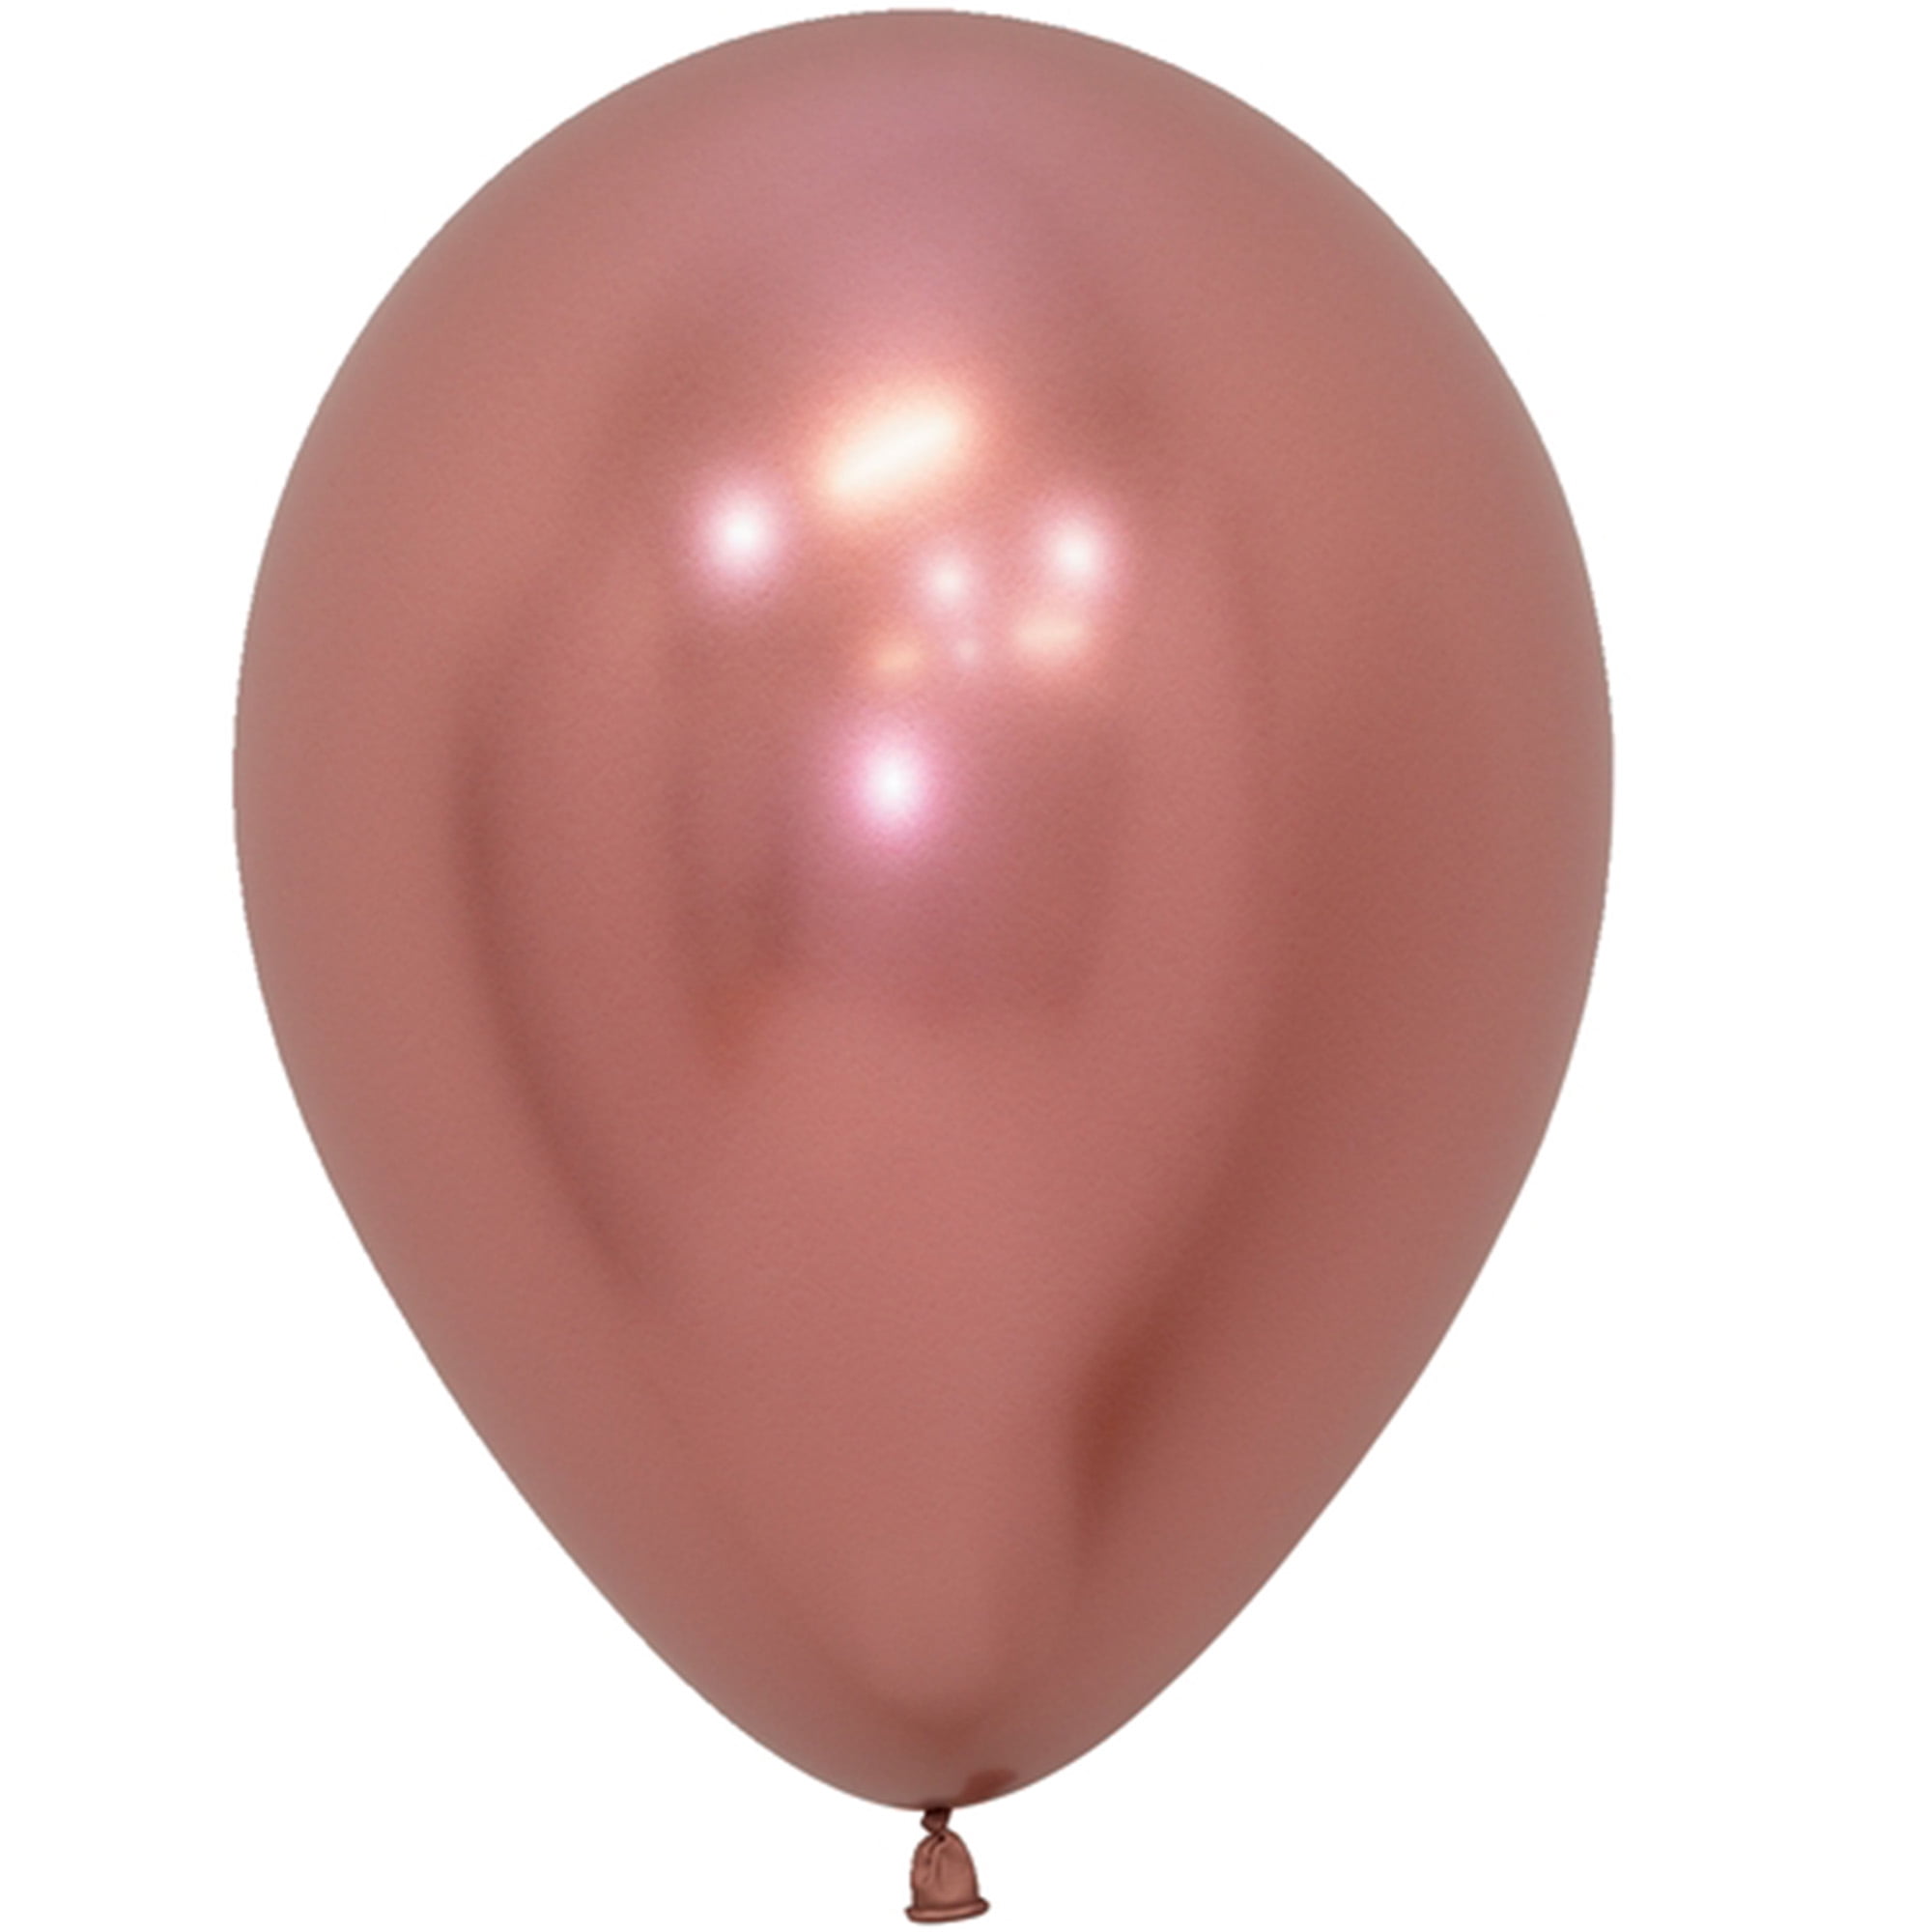 Ballon de latex fuchsia 5 pouces, 100 unités. - Party Expert